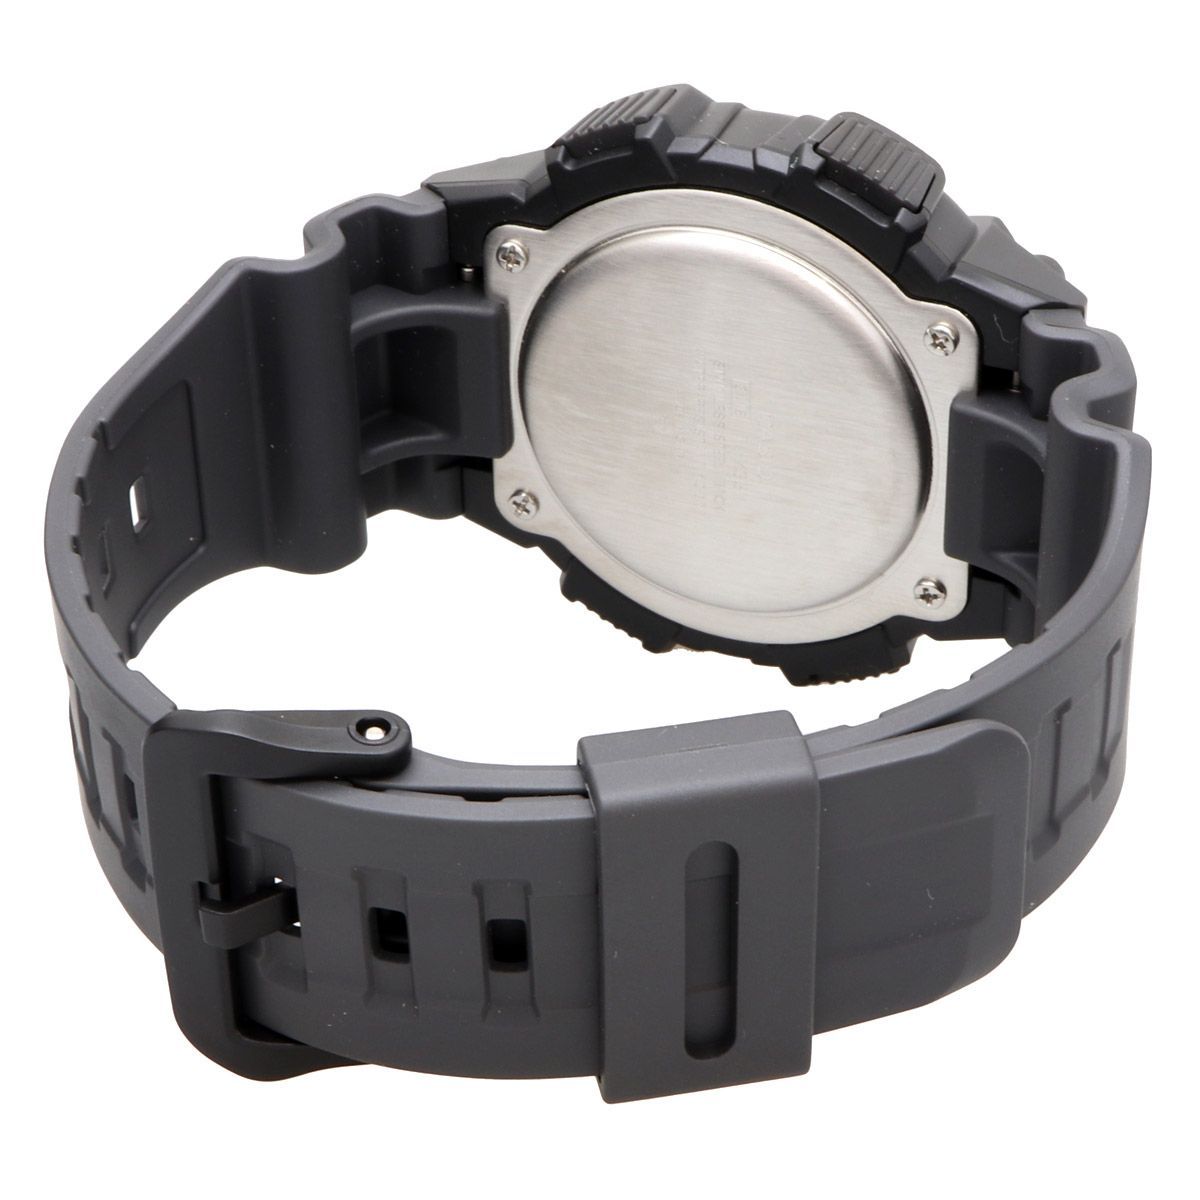 新品 未使用 カシオ チープカシオ チプカシ 腕時計 W-735H-8AV-2